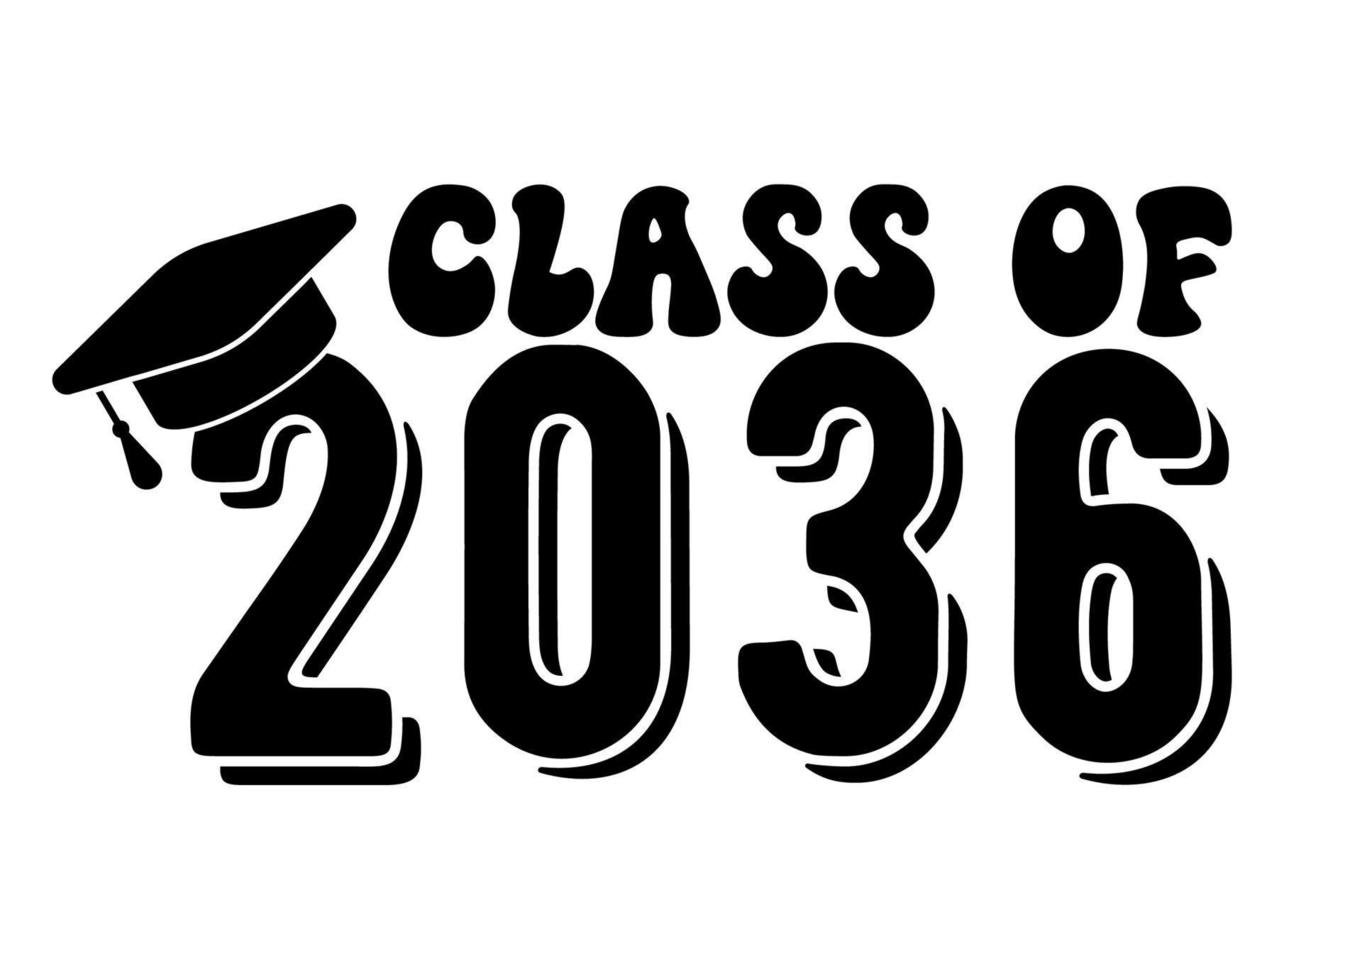 diploma uitreiking ceremonie. klasse van 2036. vector